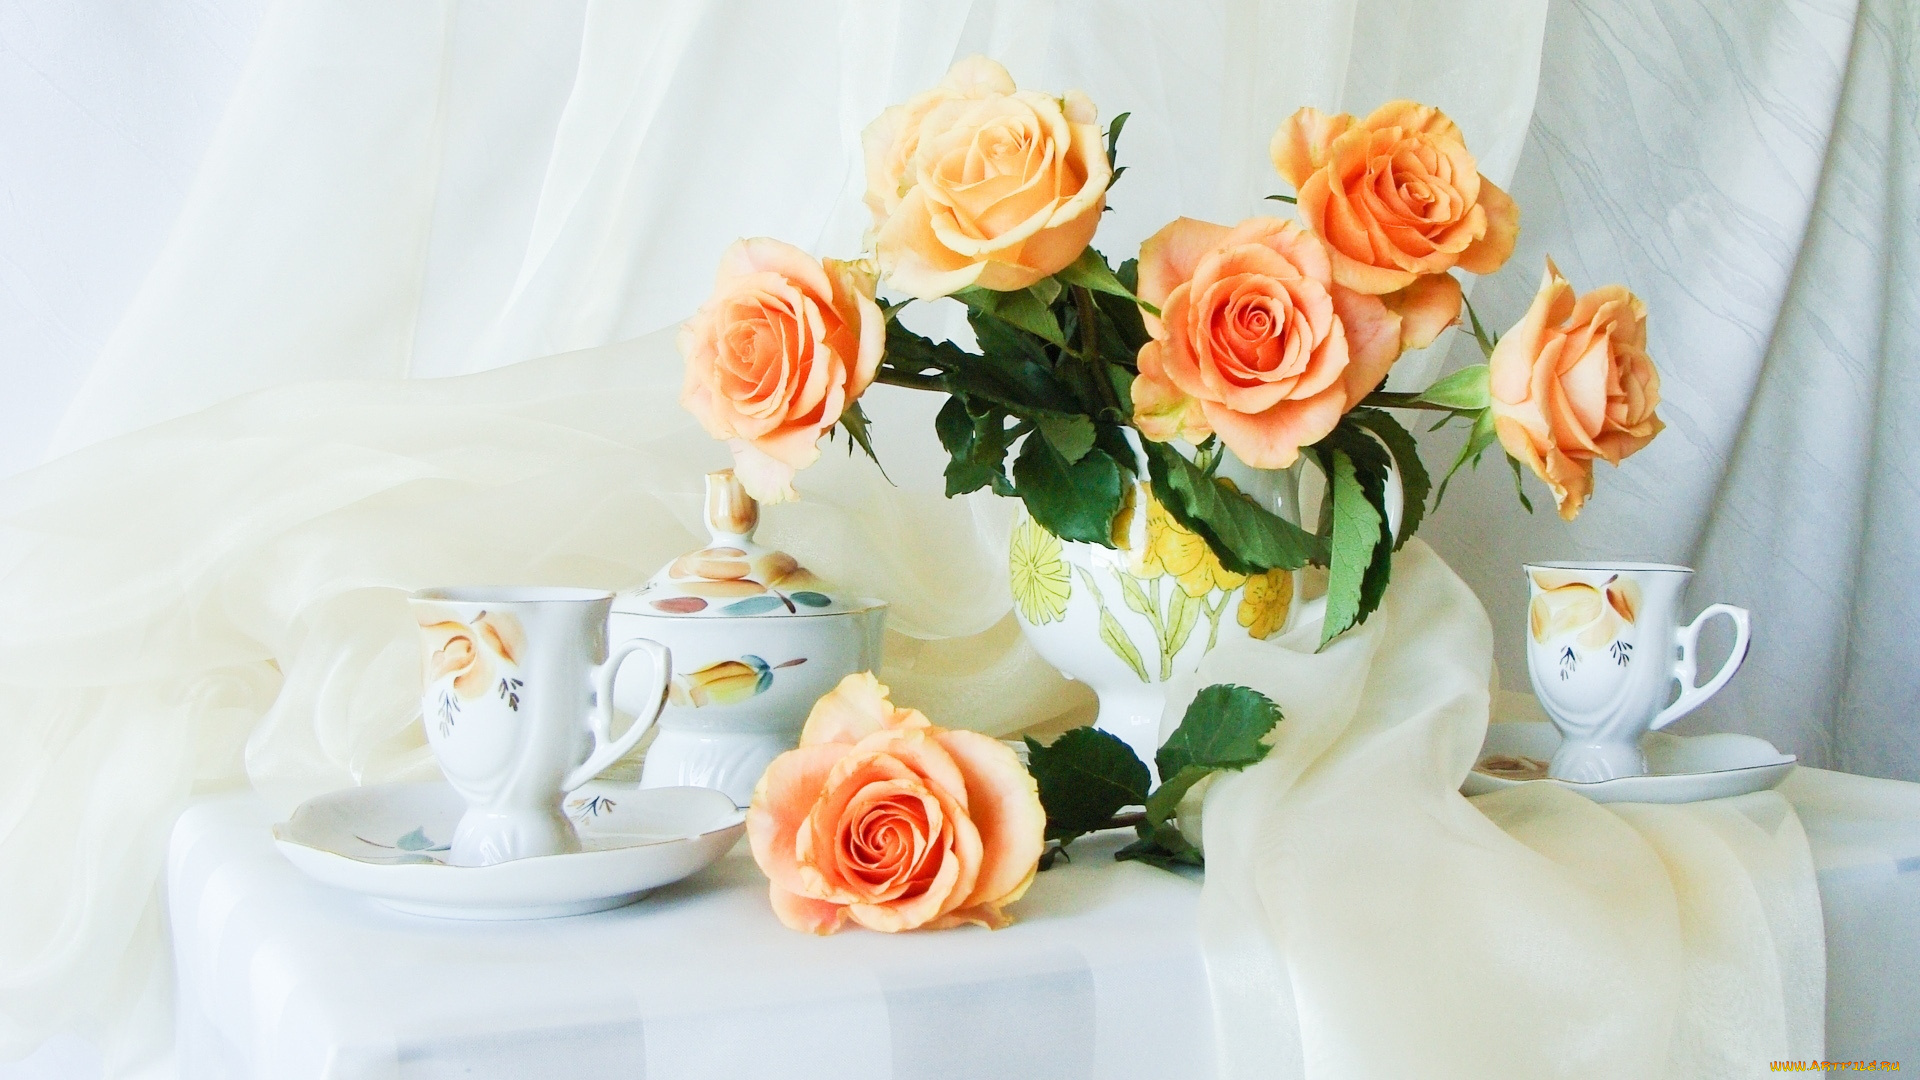 Нежного успешного дня. Утренние цветы. Красивые букеты цветов в вазах. Утренний букет. Нежные розы в вазе.